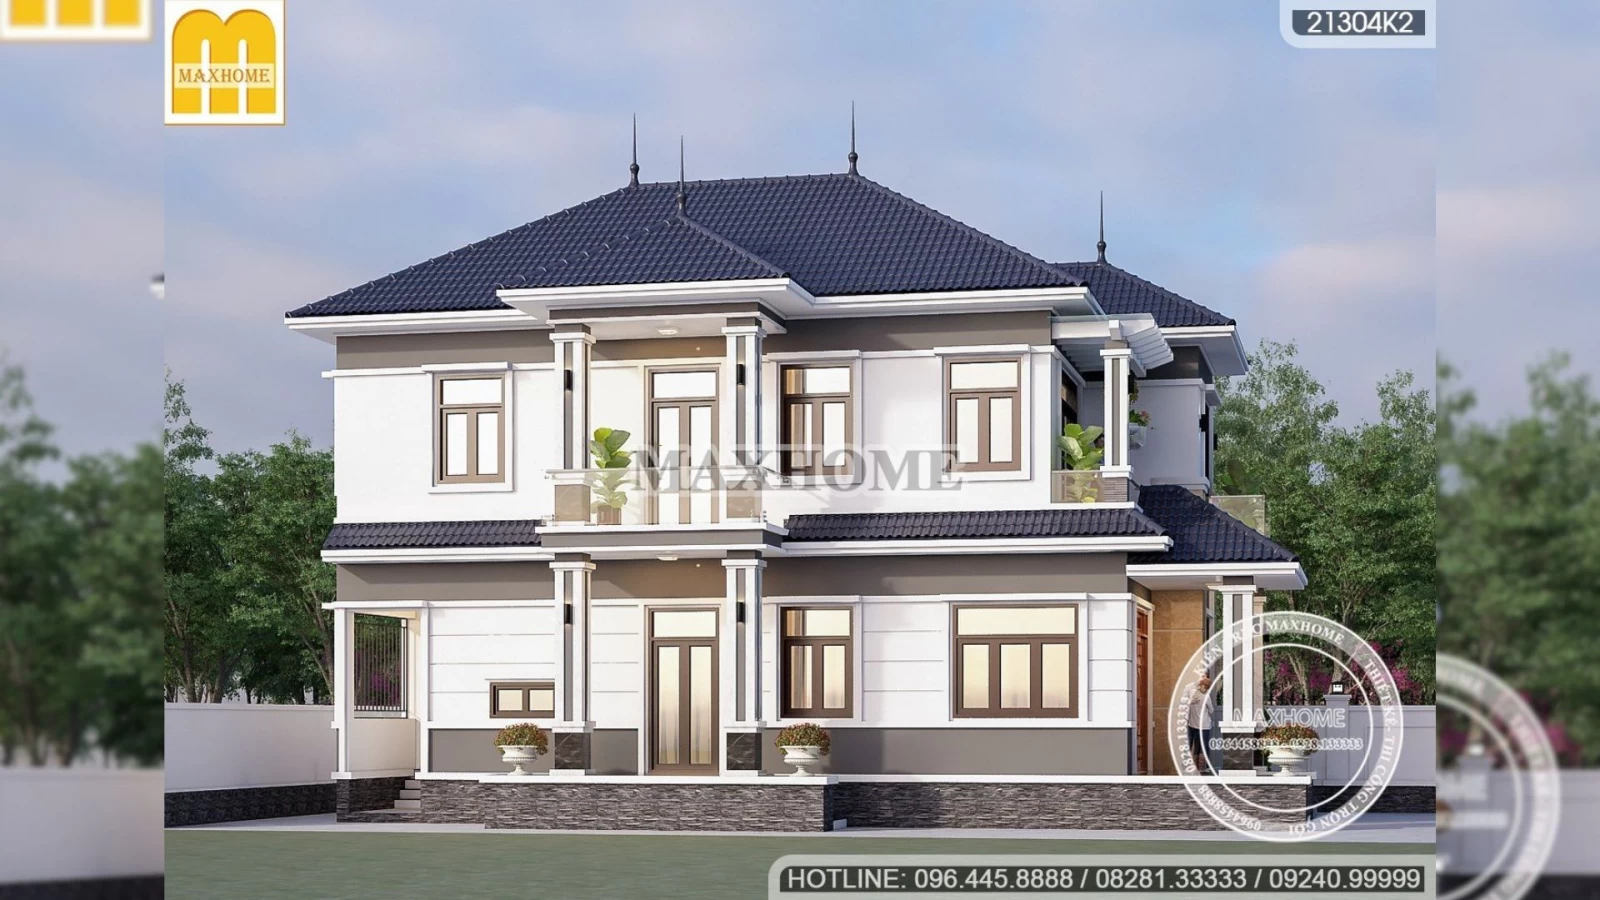 Mua bản vẽ nhà đẹp 2 tầng mái Nhật sở hữu công năng tiện nghi | MH02334